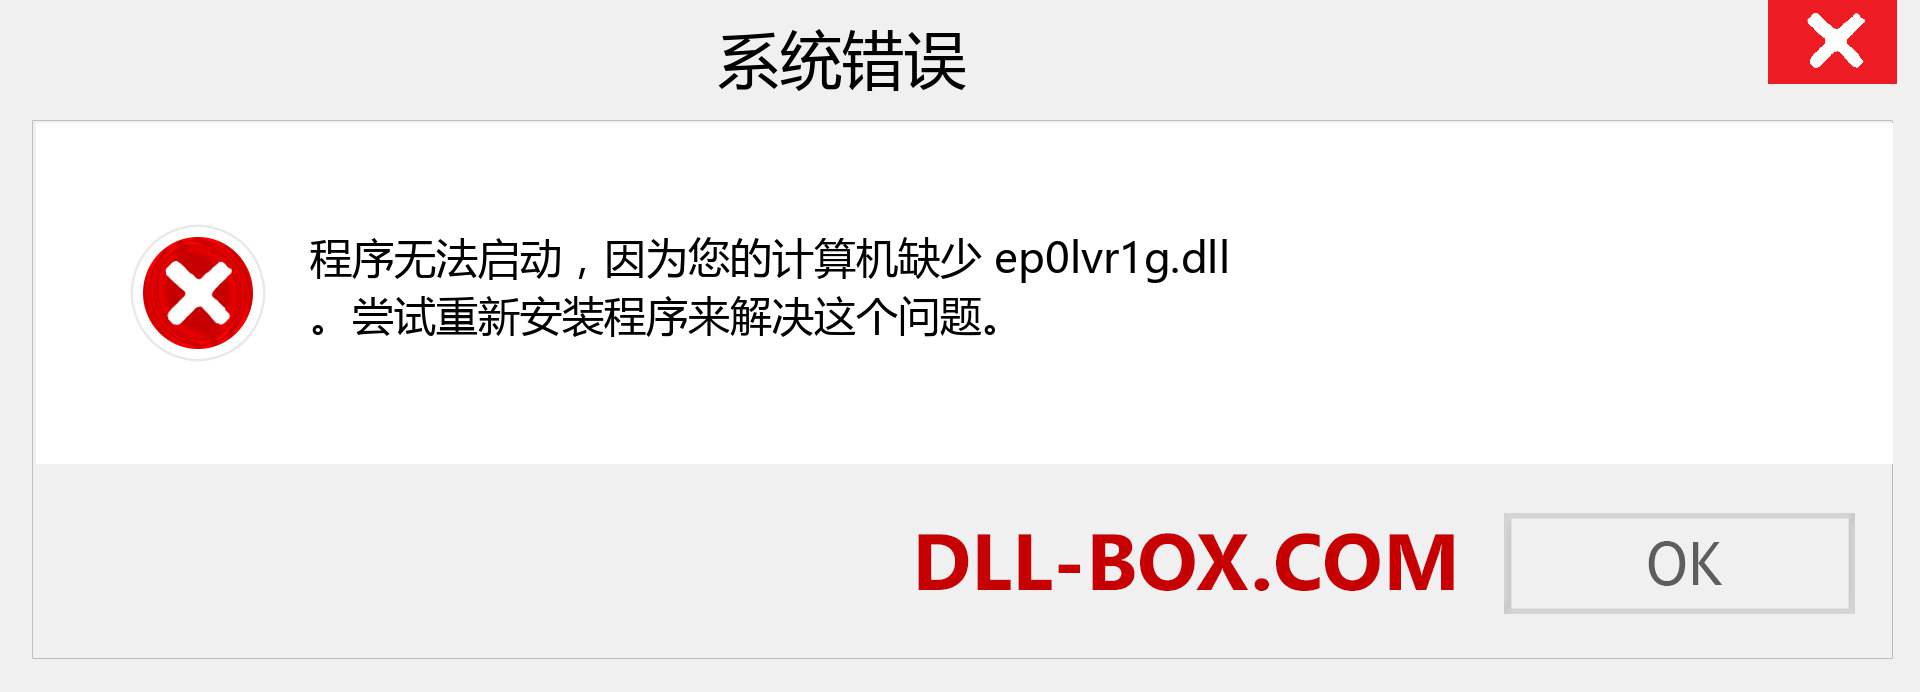 ep0lvr1g.dll 文件丢失？。 适用于 Windows 7、8、10 的下载 - 修复 Windows、照片、图像上的 ep0lvr1g dll 丢失错误